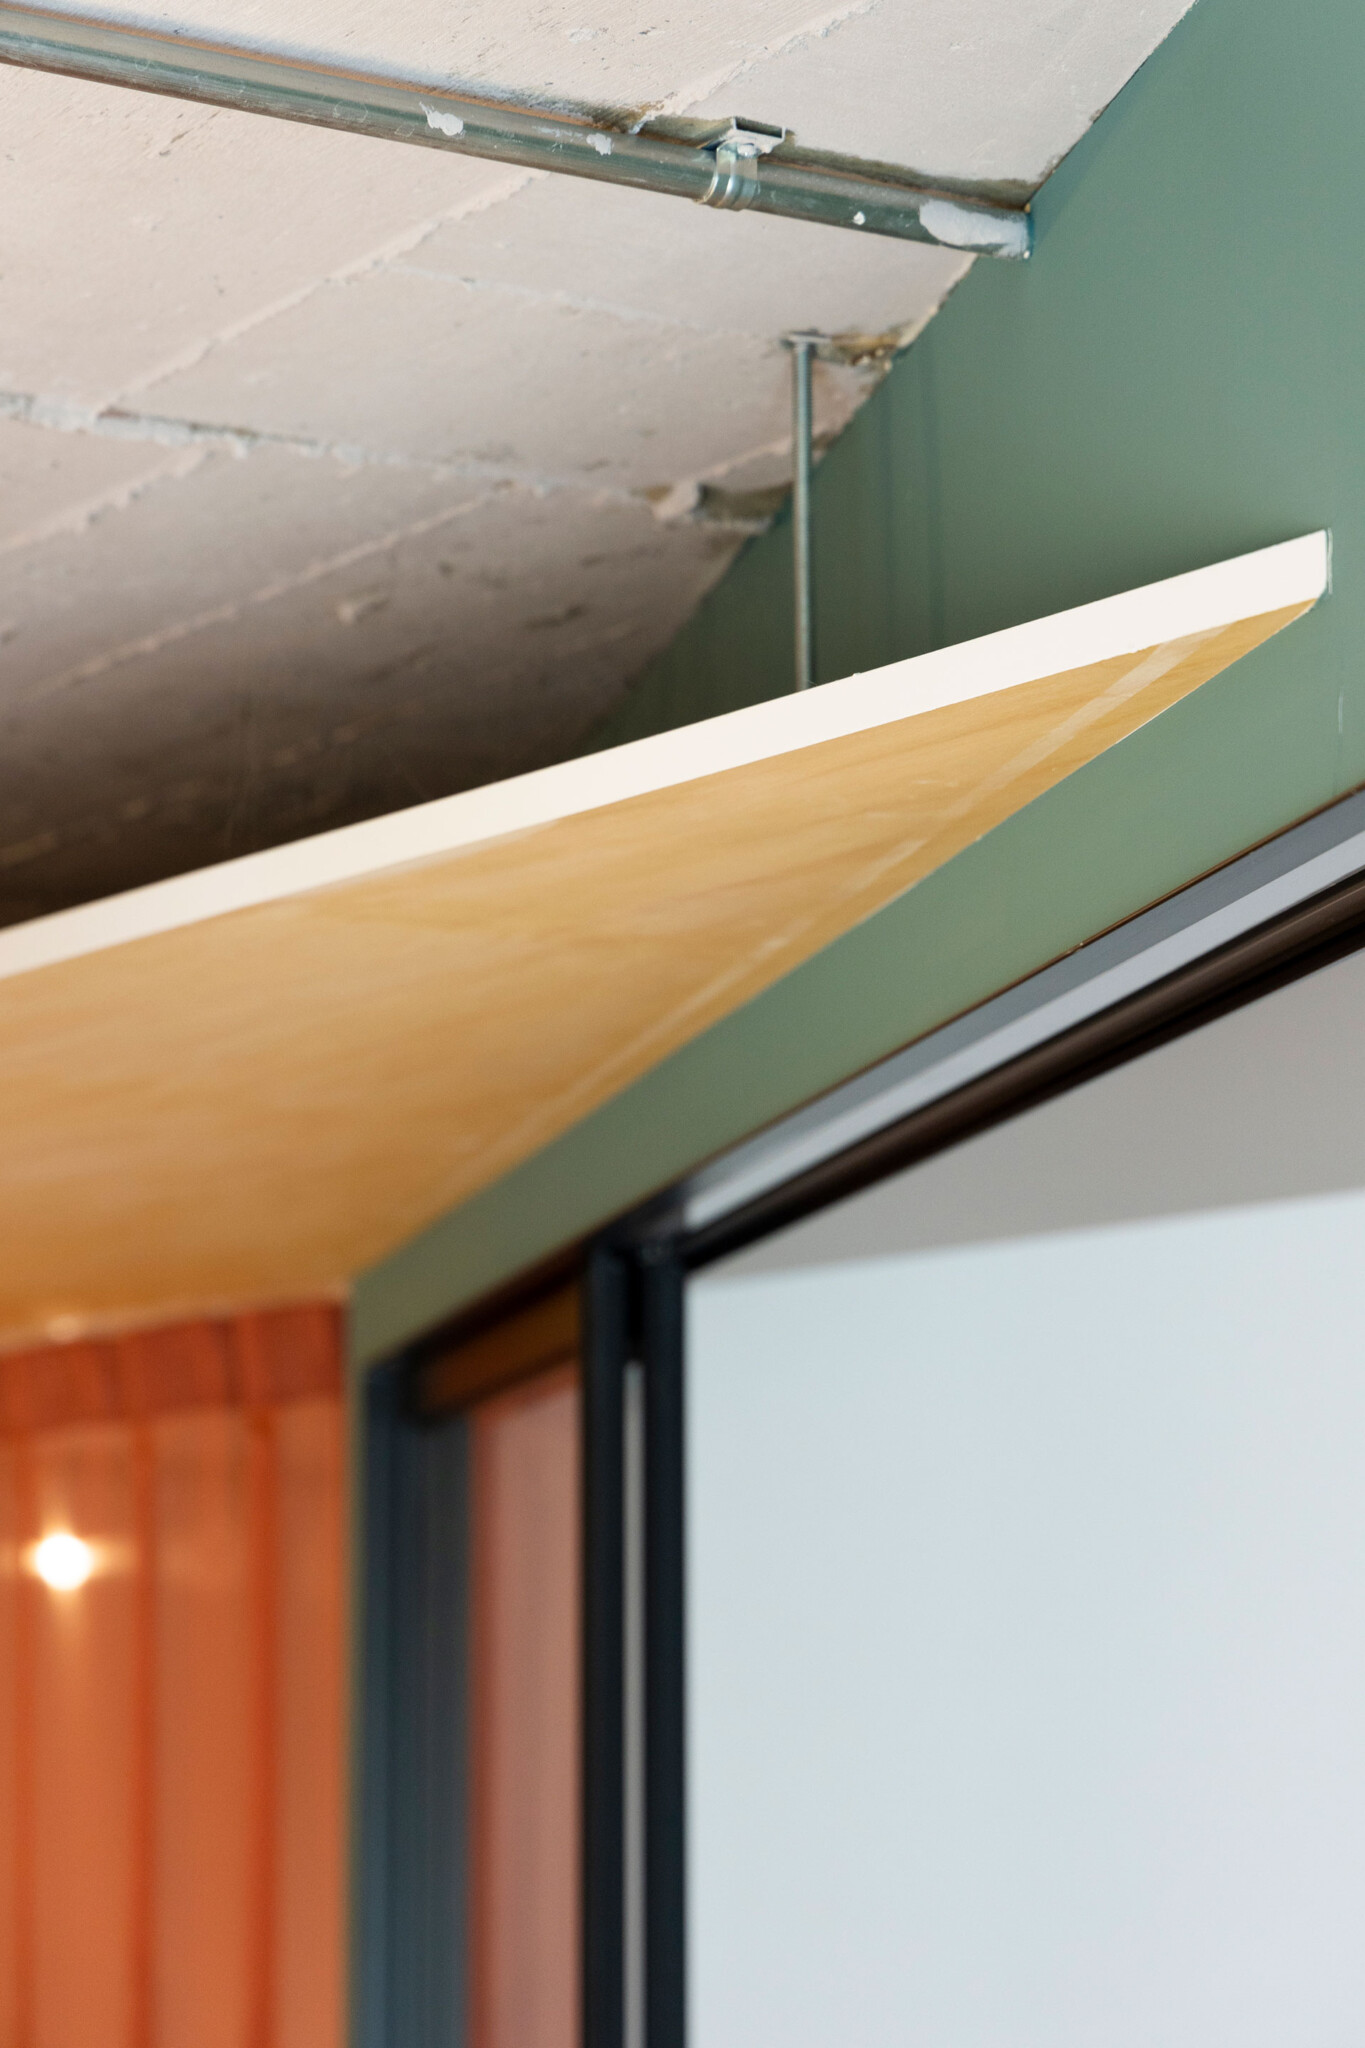 吊り天井を見ると、部屋が斜めになっているのがよくわかる。現しの天井と吊り天井の間のスペースに、配管や配線などの見せたくないものを通している。